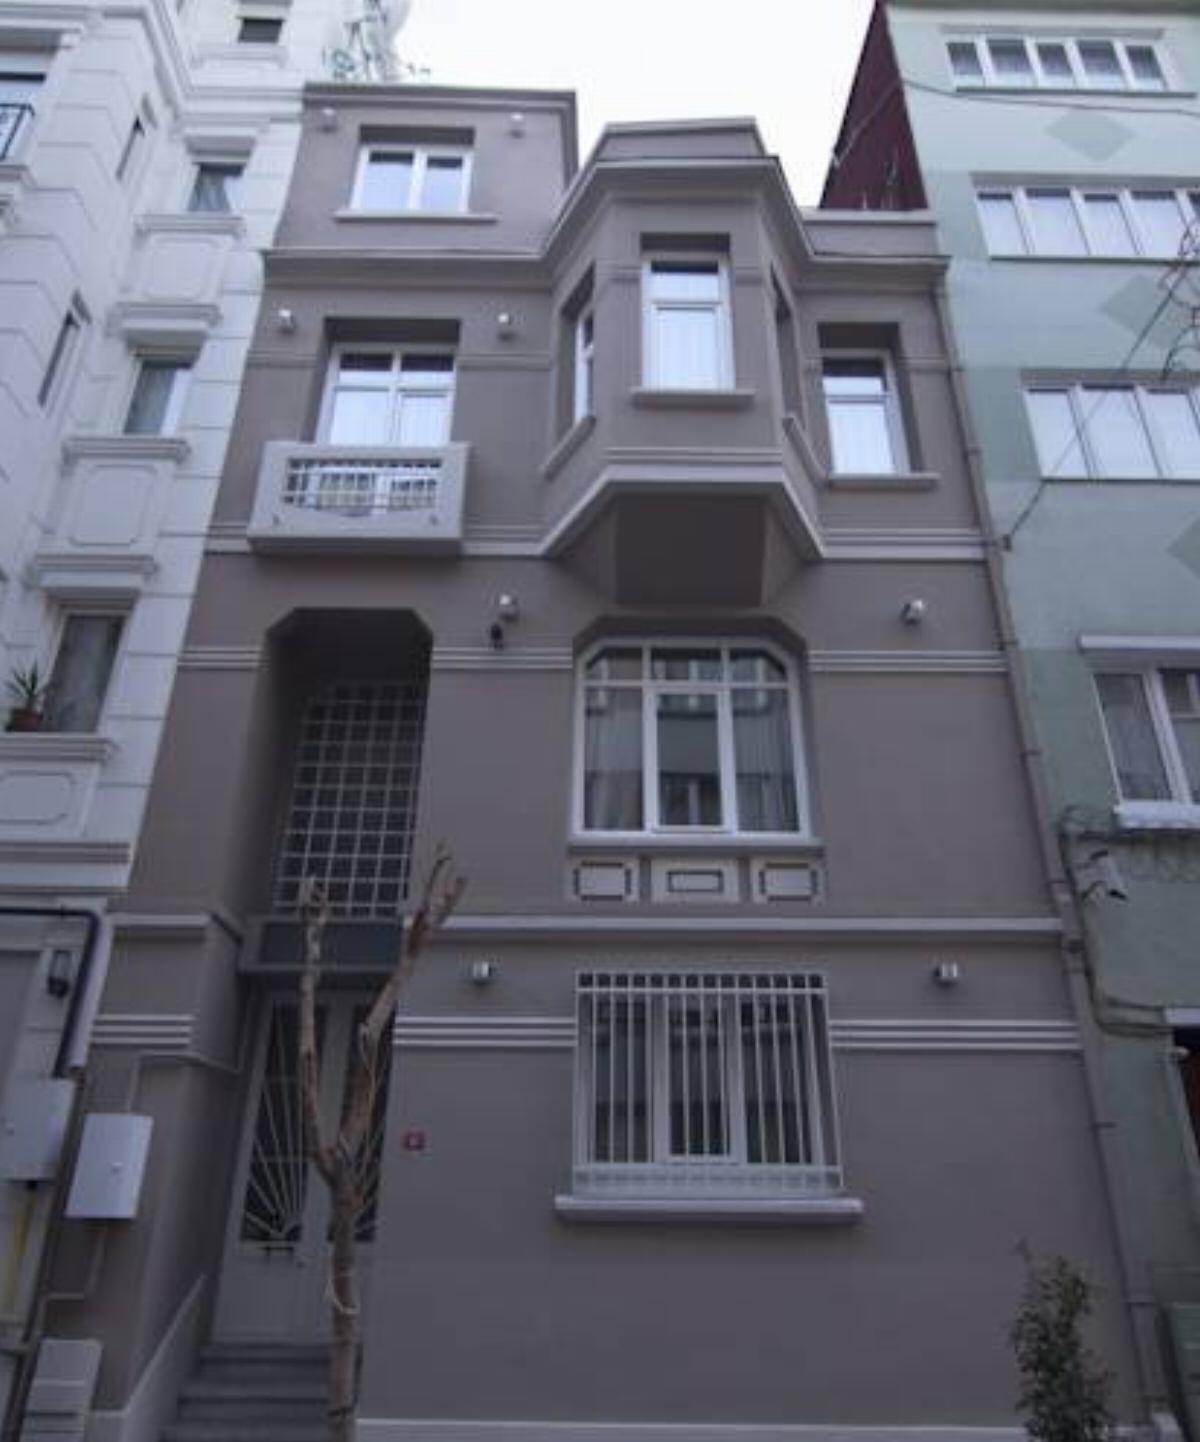 Urban Homes İstanbul Hotel İstanbul Turkey